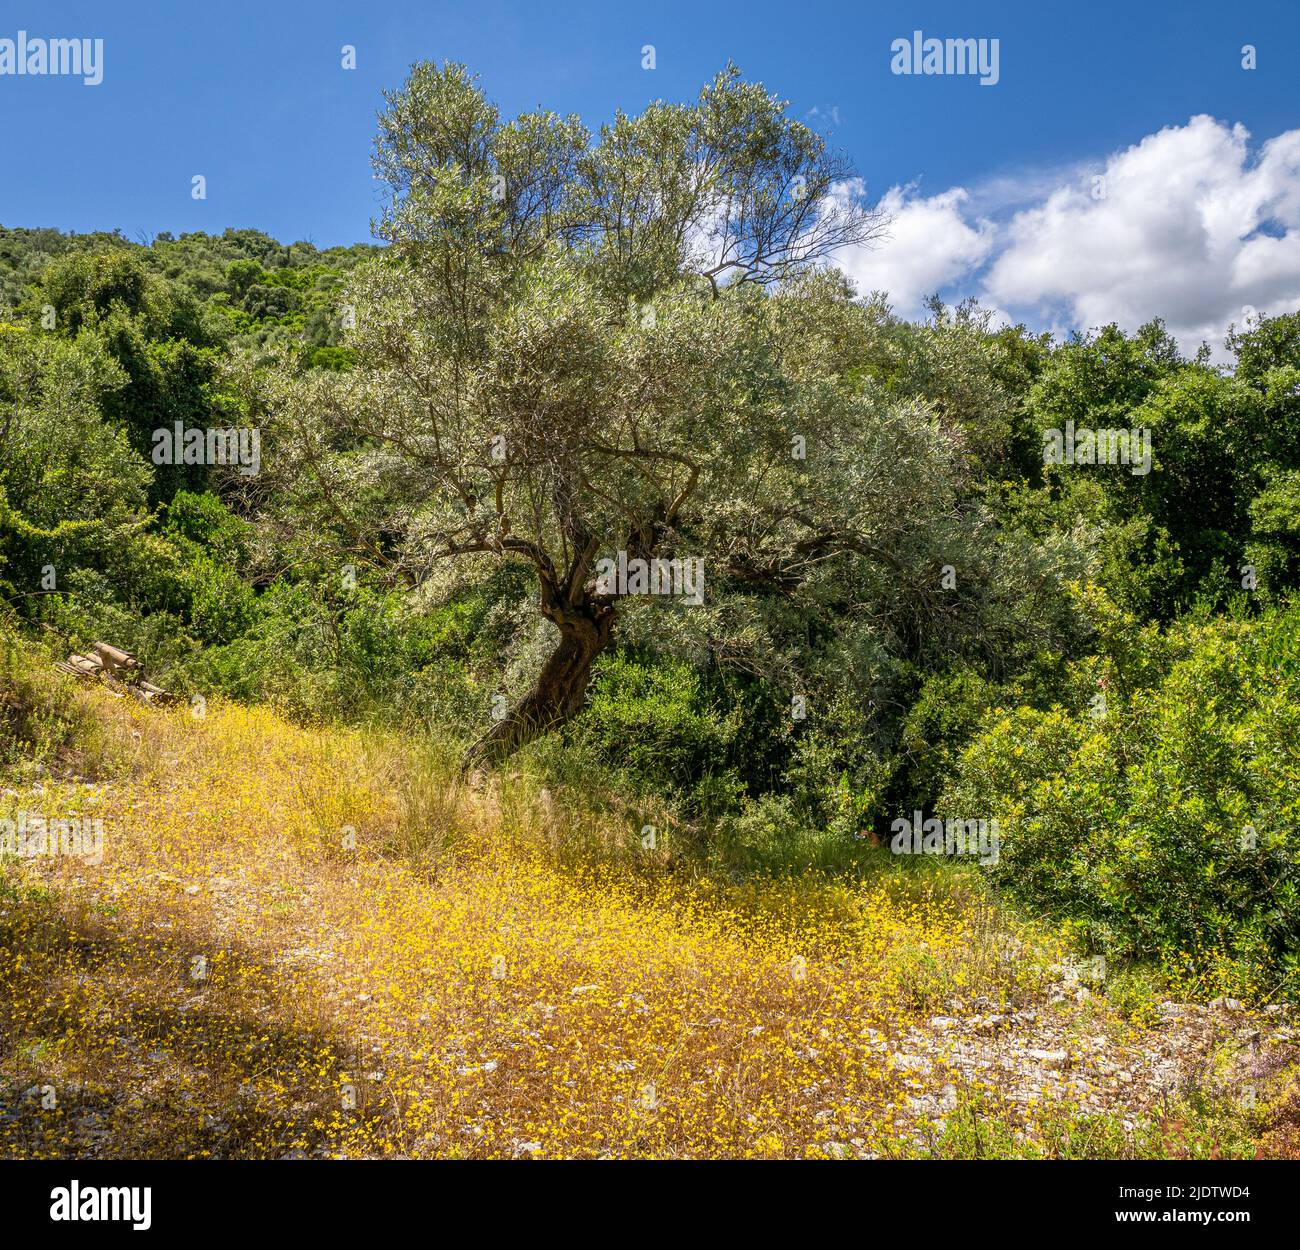 Olivo en la isla de Lefkada en las Islas Jónicas de Grecia Foto de stock